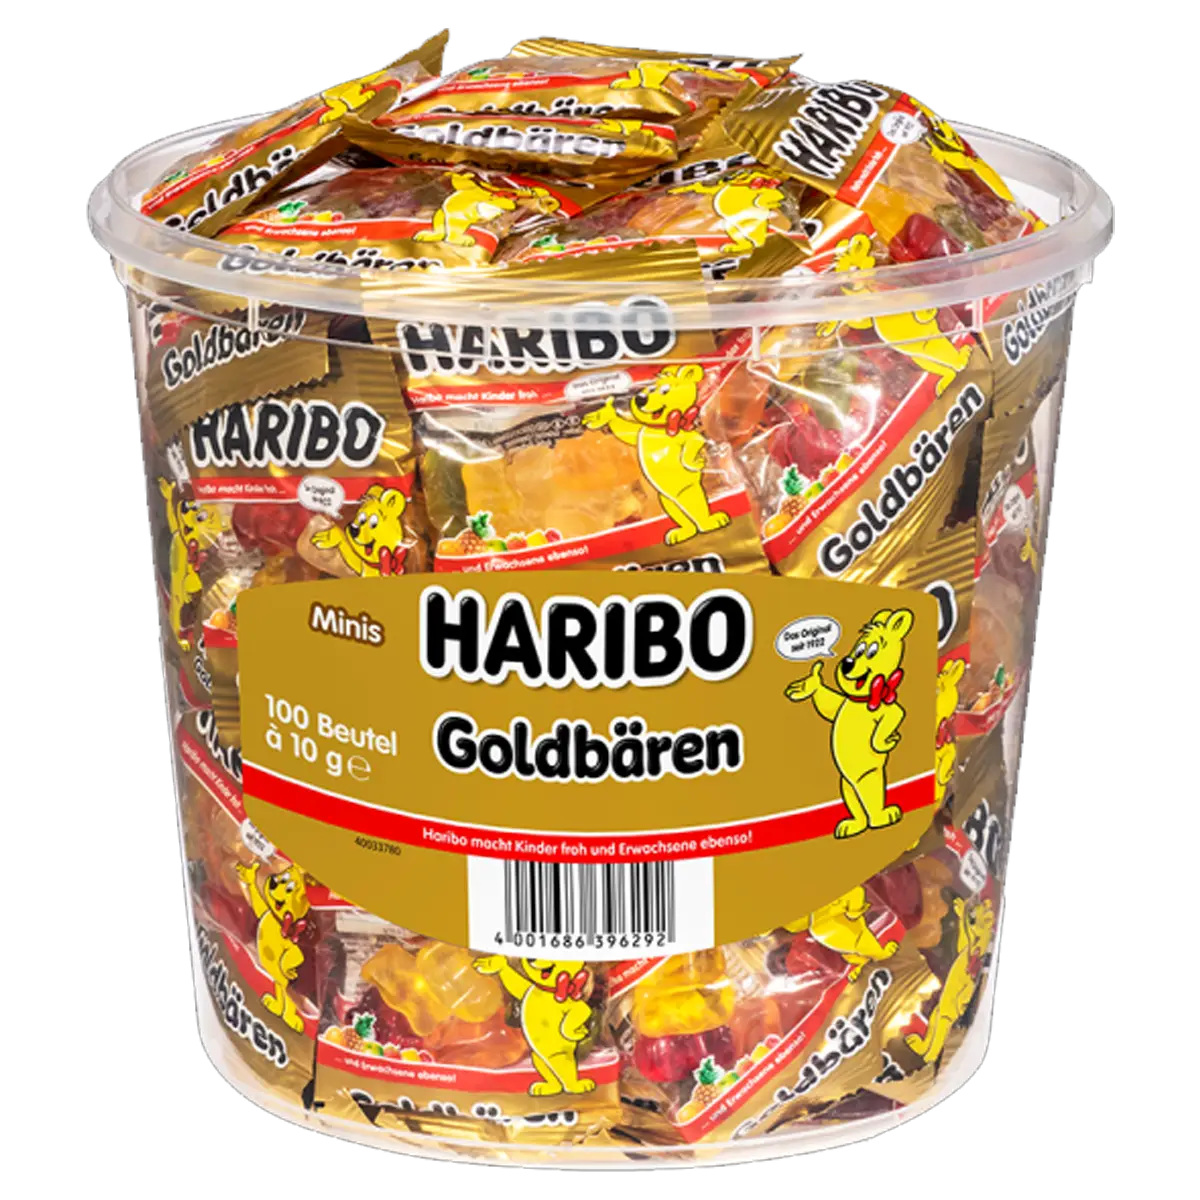 Haribo gold bears Minis, 100 bags, ca 1 kg